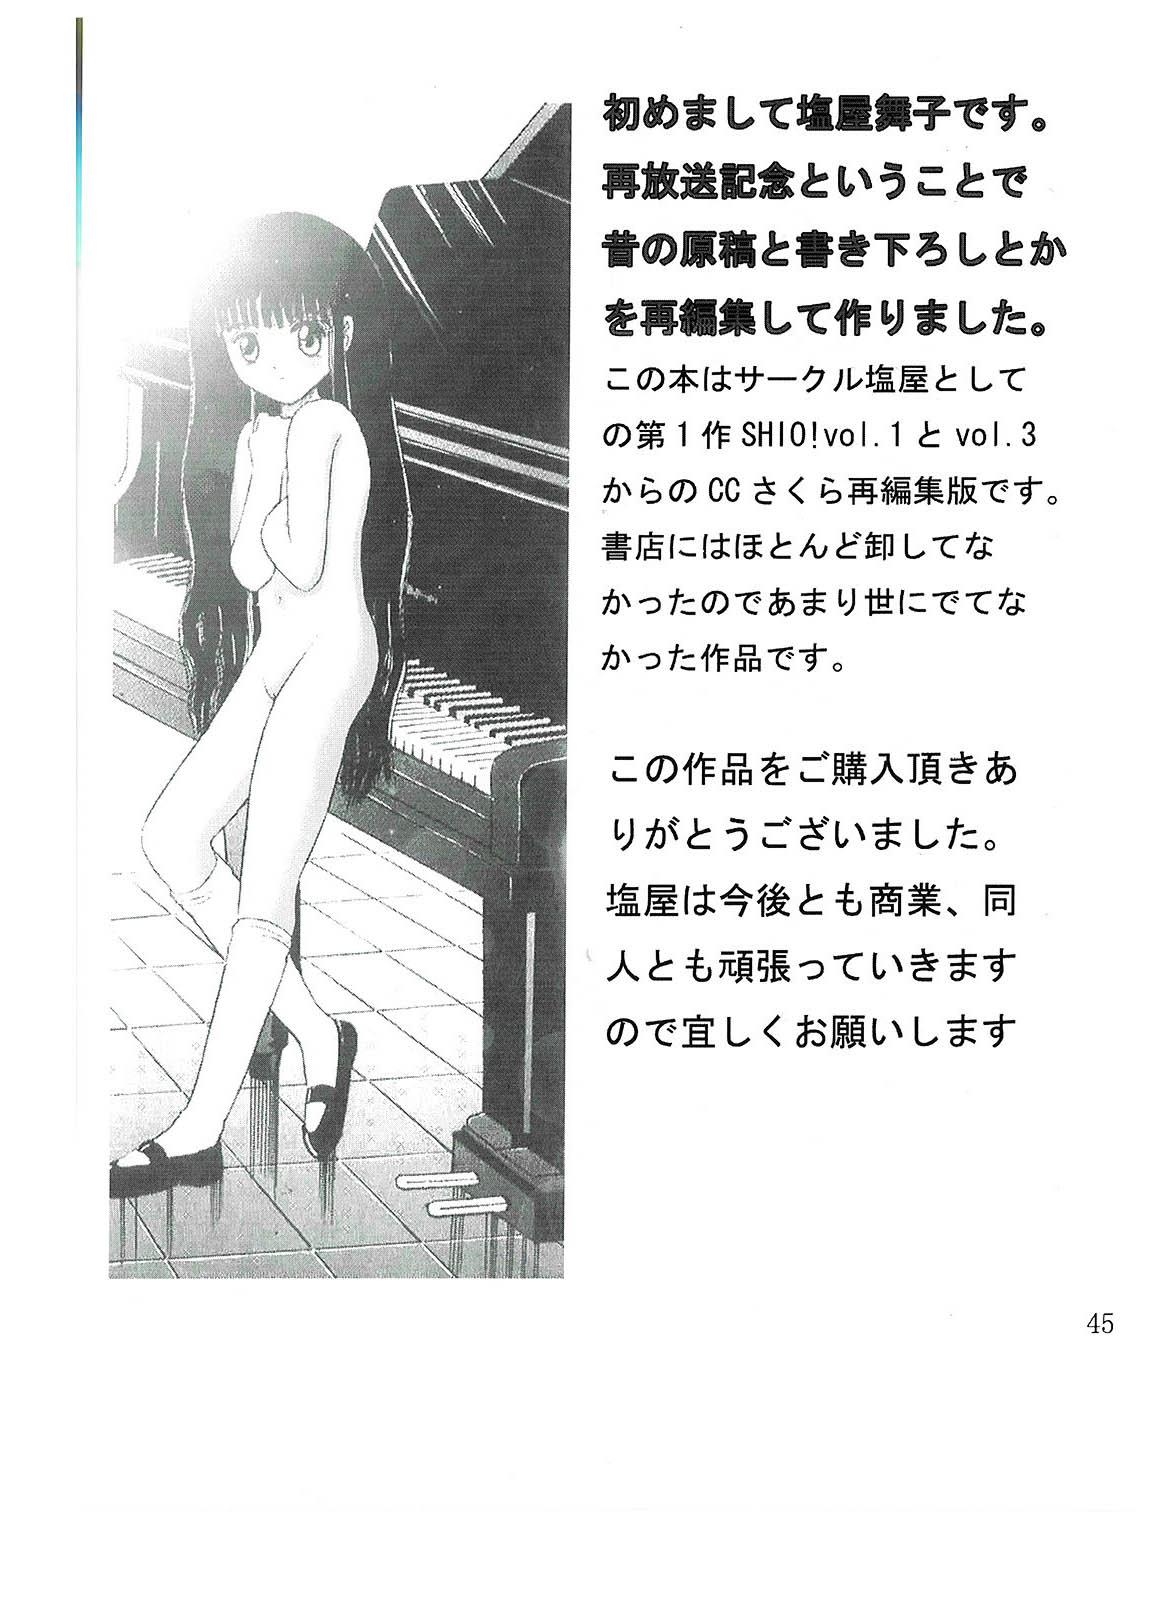 Show SHIO!re vol.1 - Cardcaptor sakura Gordibuena - Page 45